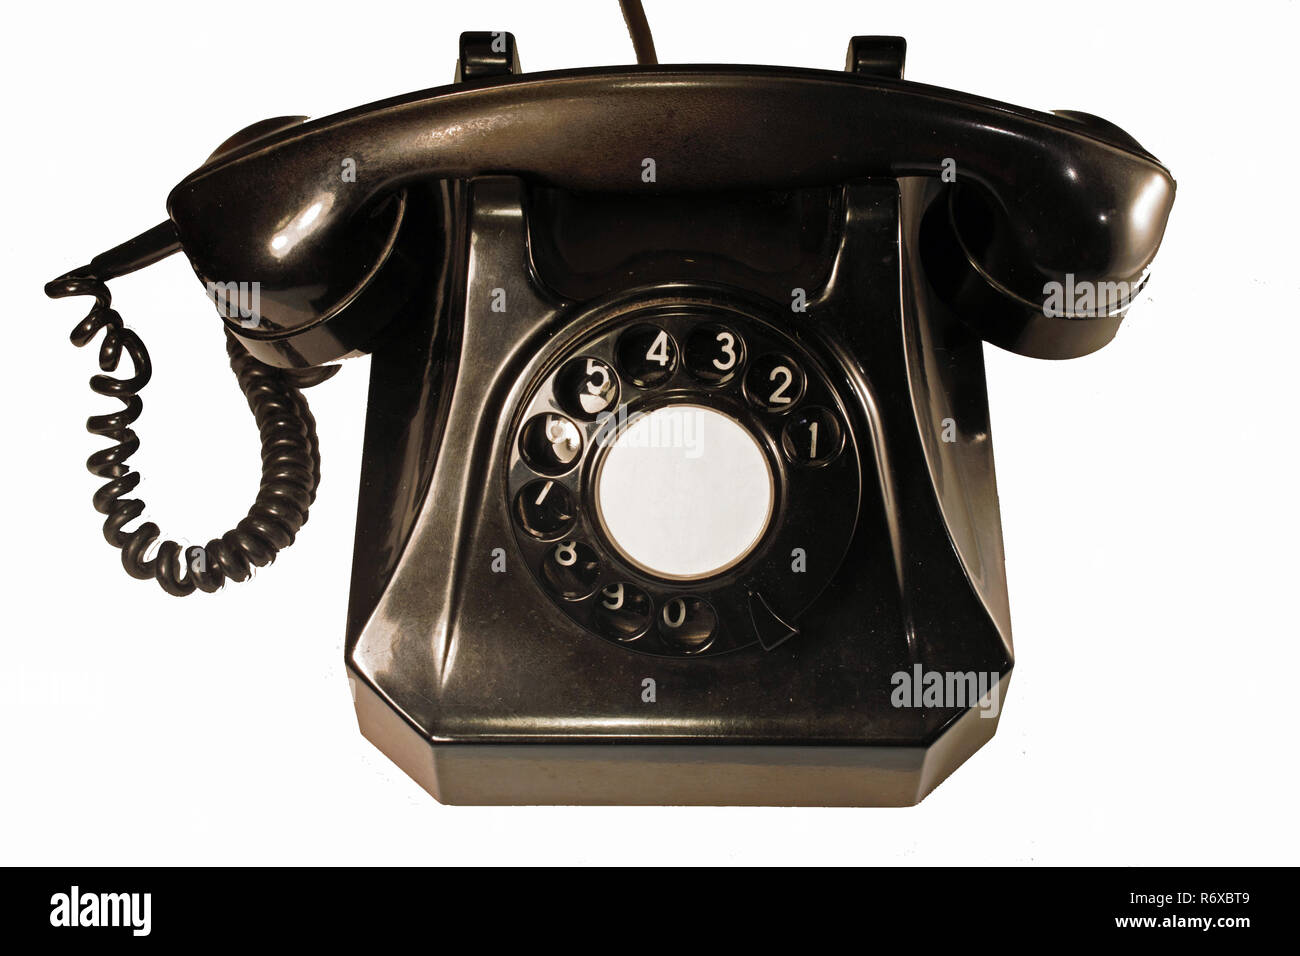 Ce type de téléphone bakélite a été produite dans le 1955 en Suisse. Il dispose d'une ligne téléphonique classique. Isolé sur fond blanc. Banque D'Images